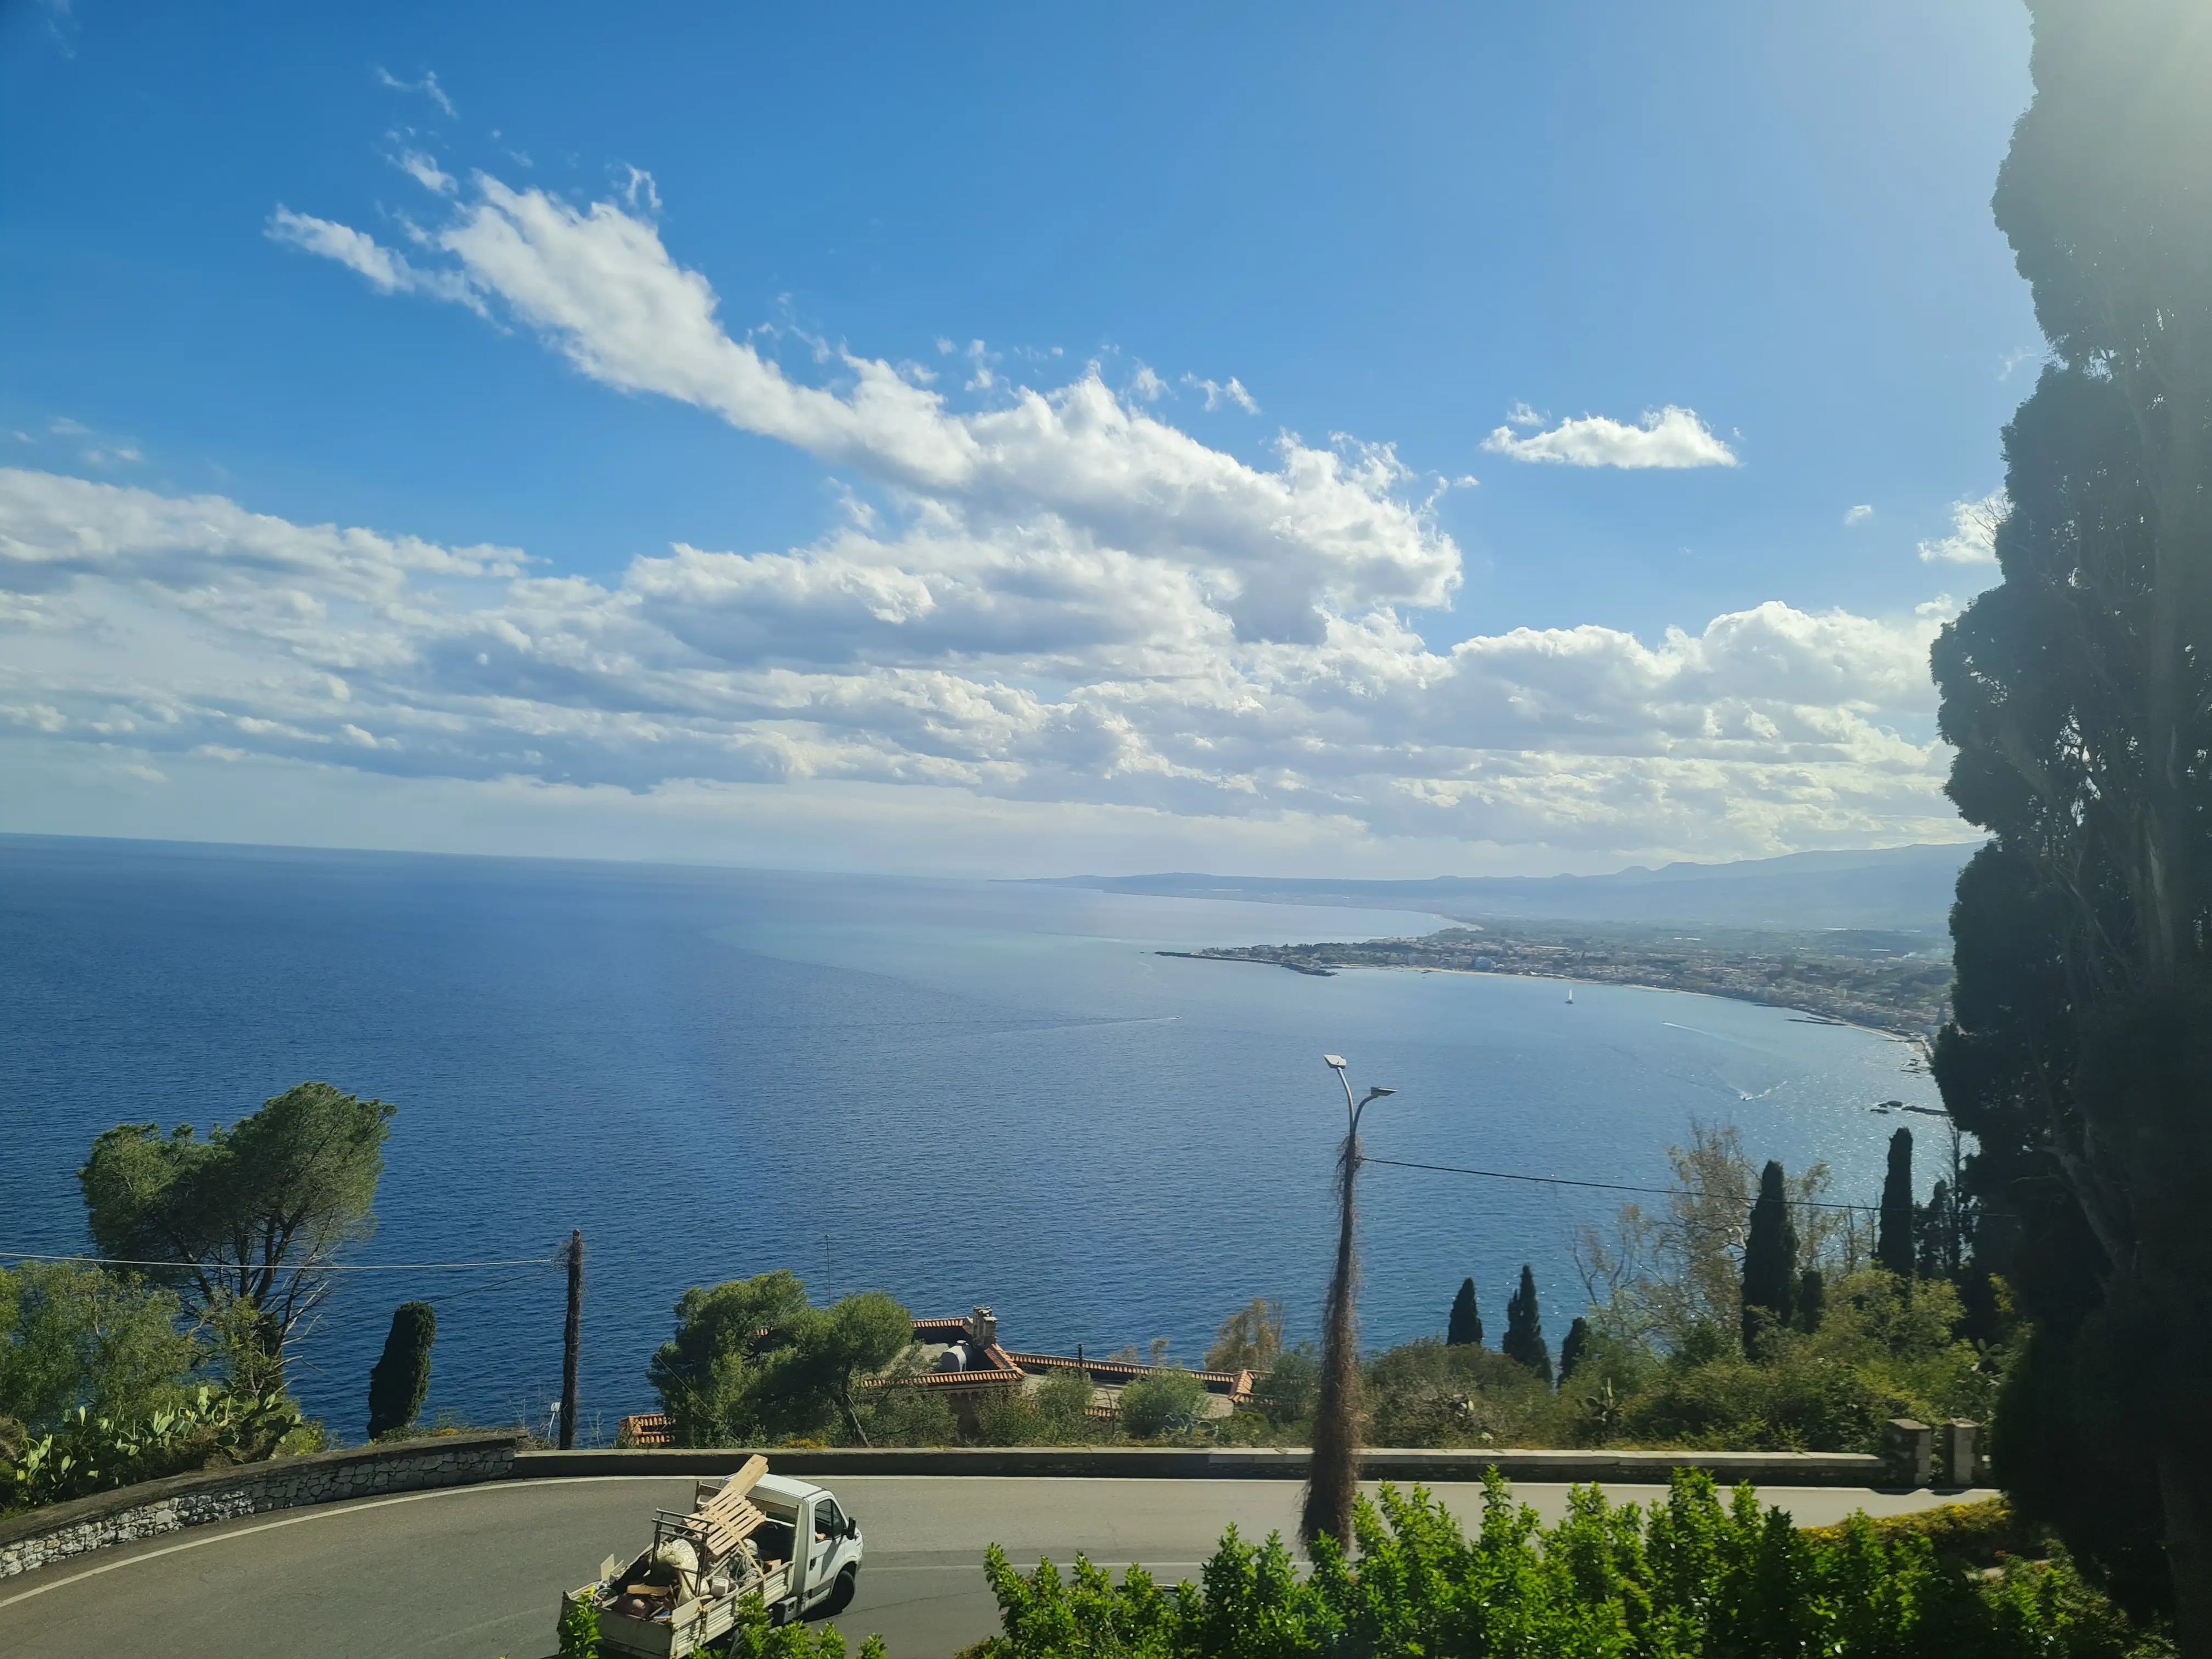 La vista desde el autobús que viaja de Catania a Taormina.